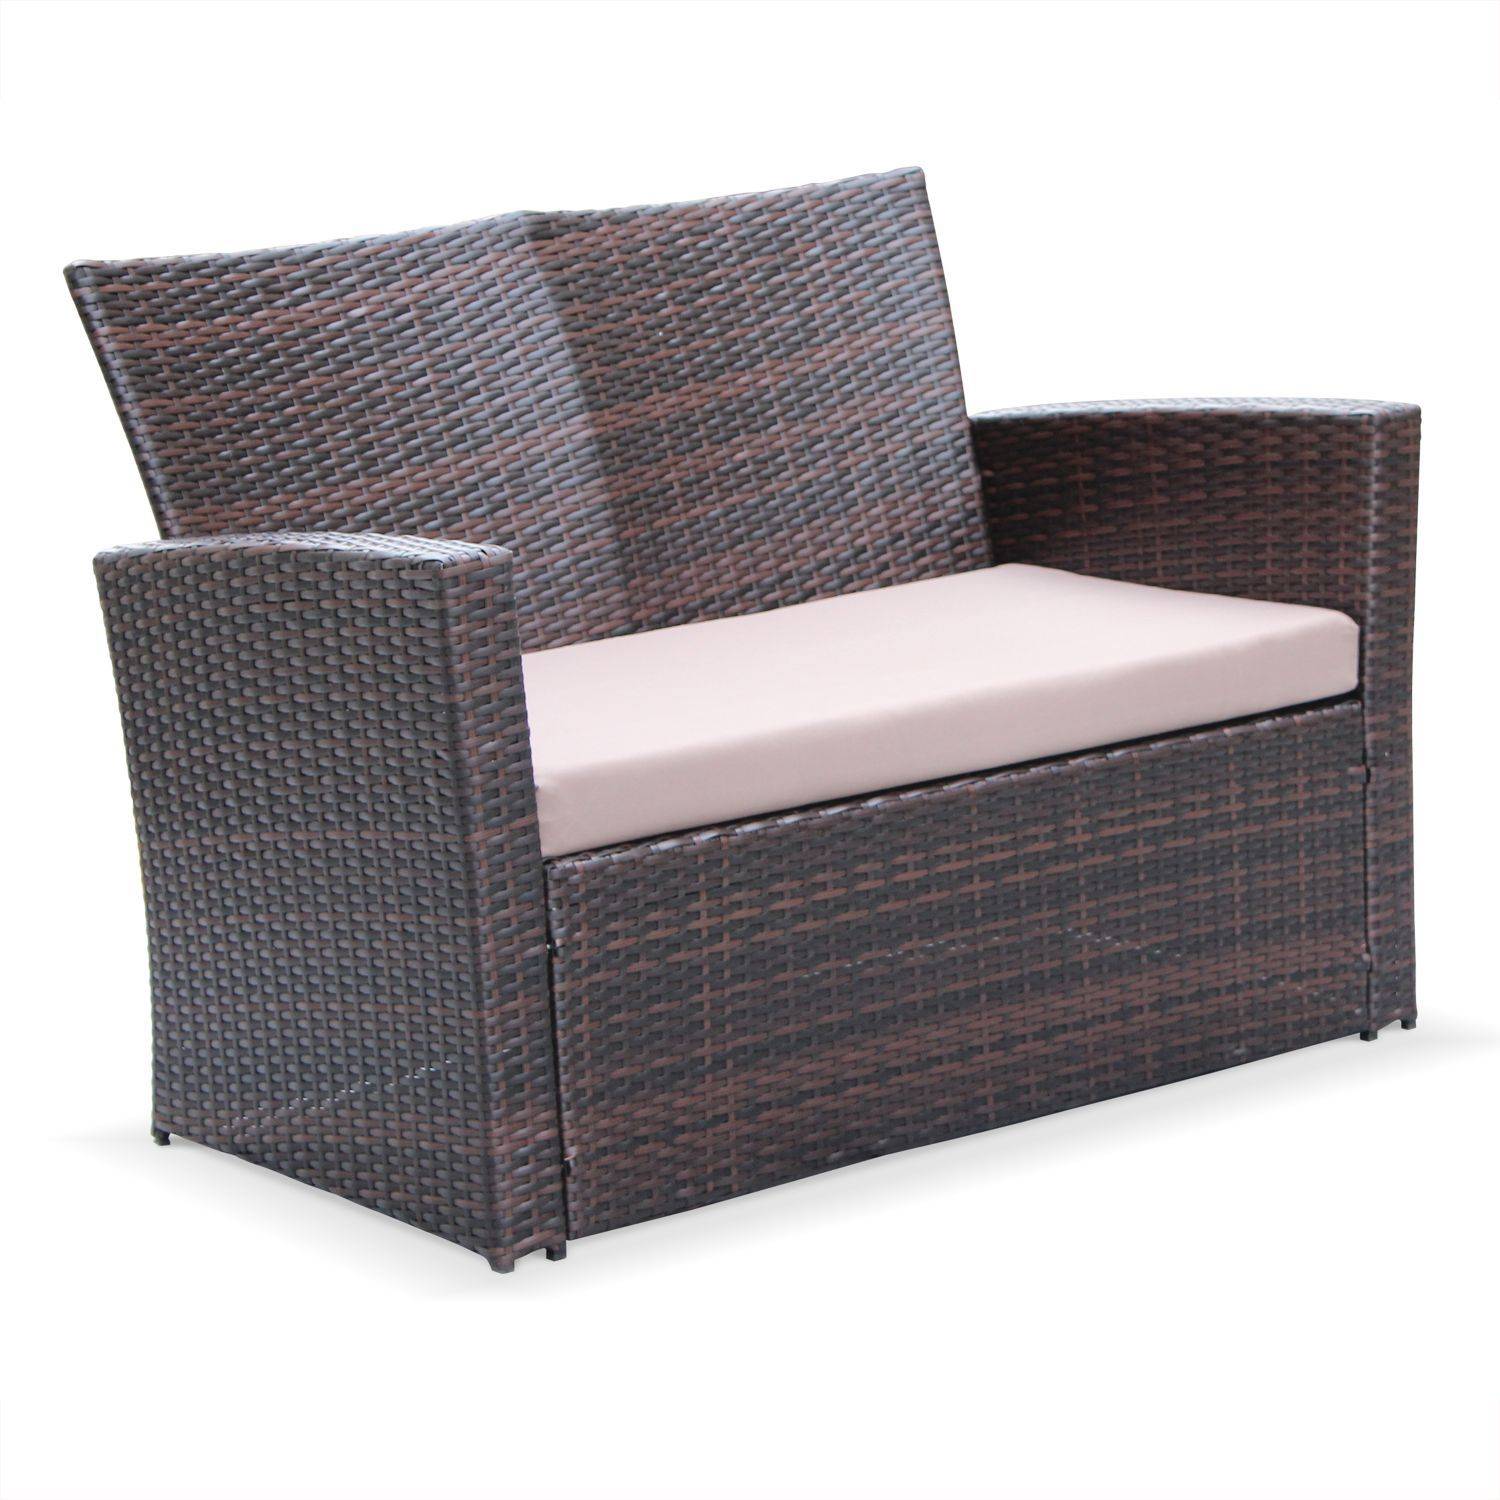 Asti -  set van 1 sofa, 2 fauteuils en 1 salontafel van rondgevlochten hars. Photo2